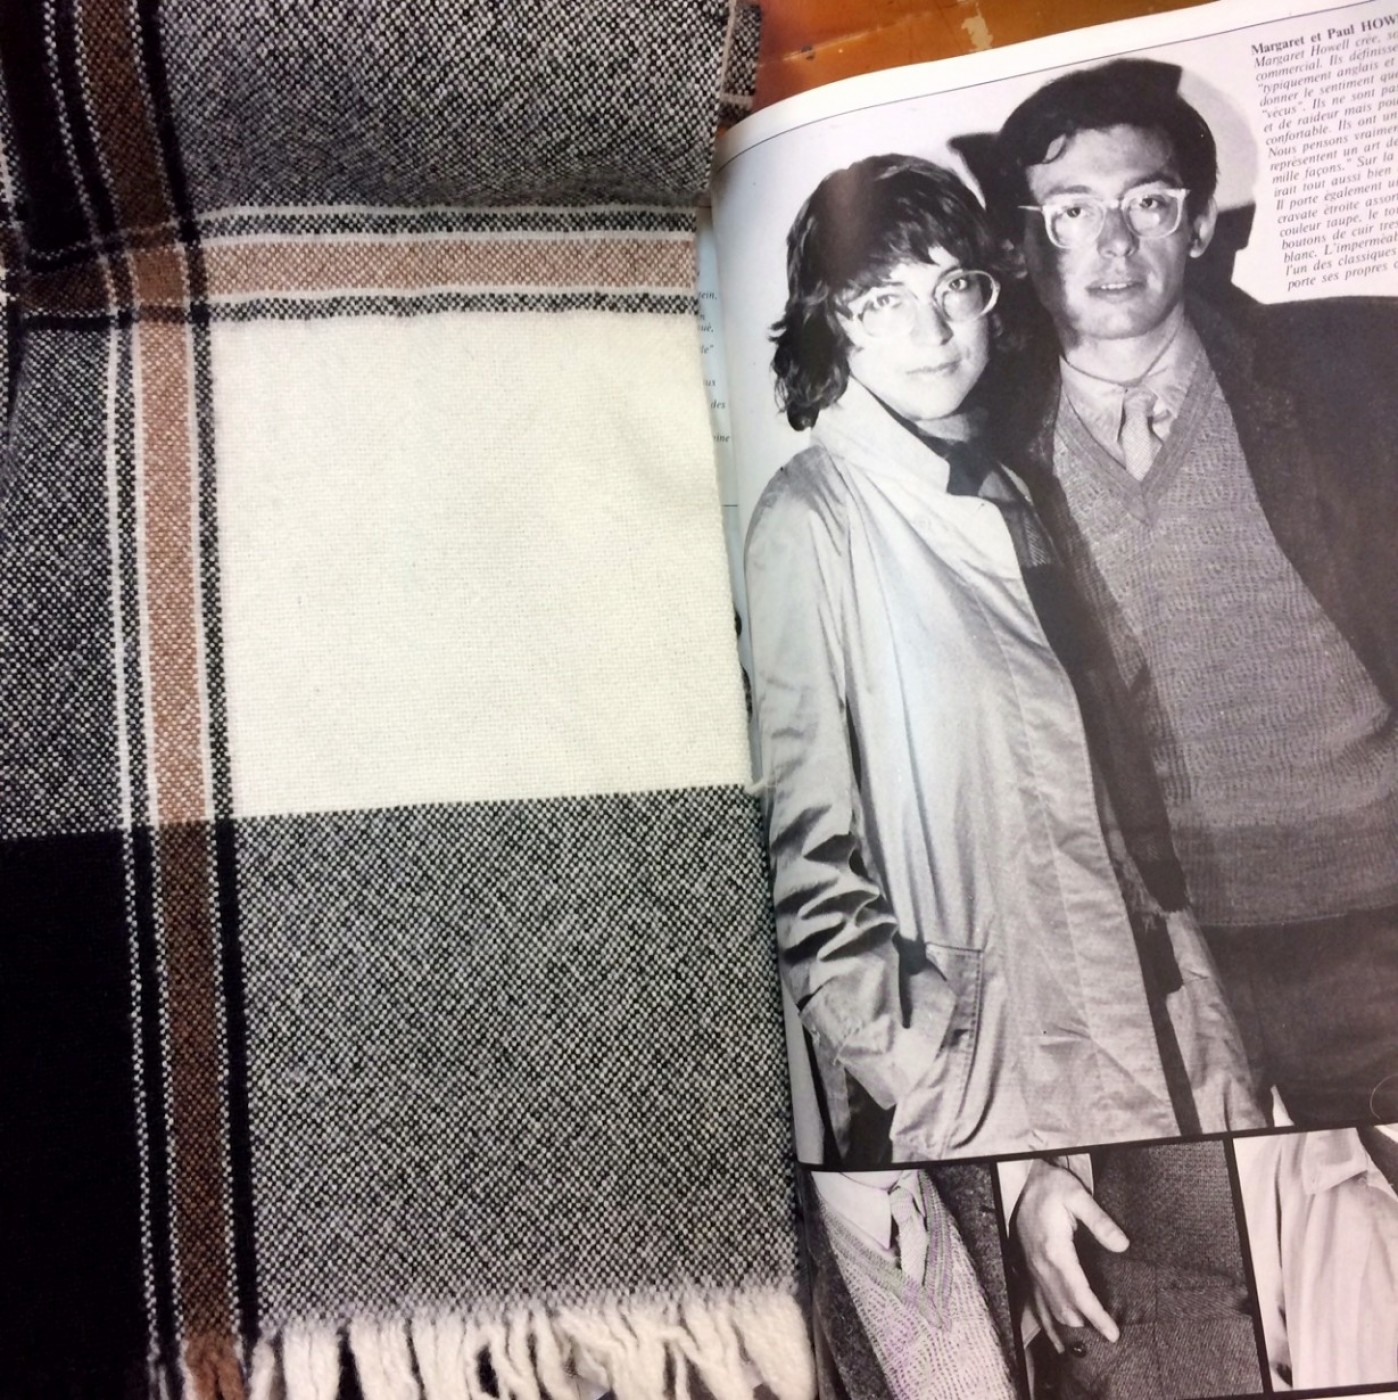 雑誌は『VOGUE HOMME PARIS』1977-78秋冬号。特集 “Made in England” でのハウエル夫妻。このステンカラーコートもいい感じ。